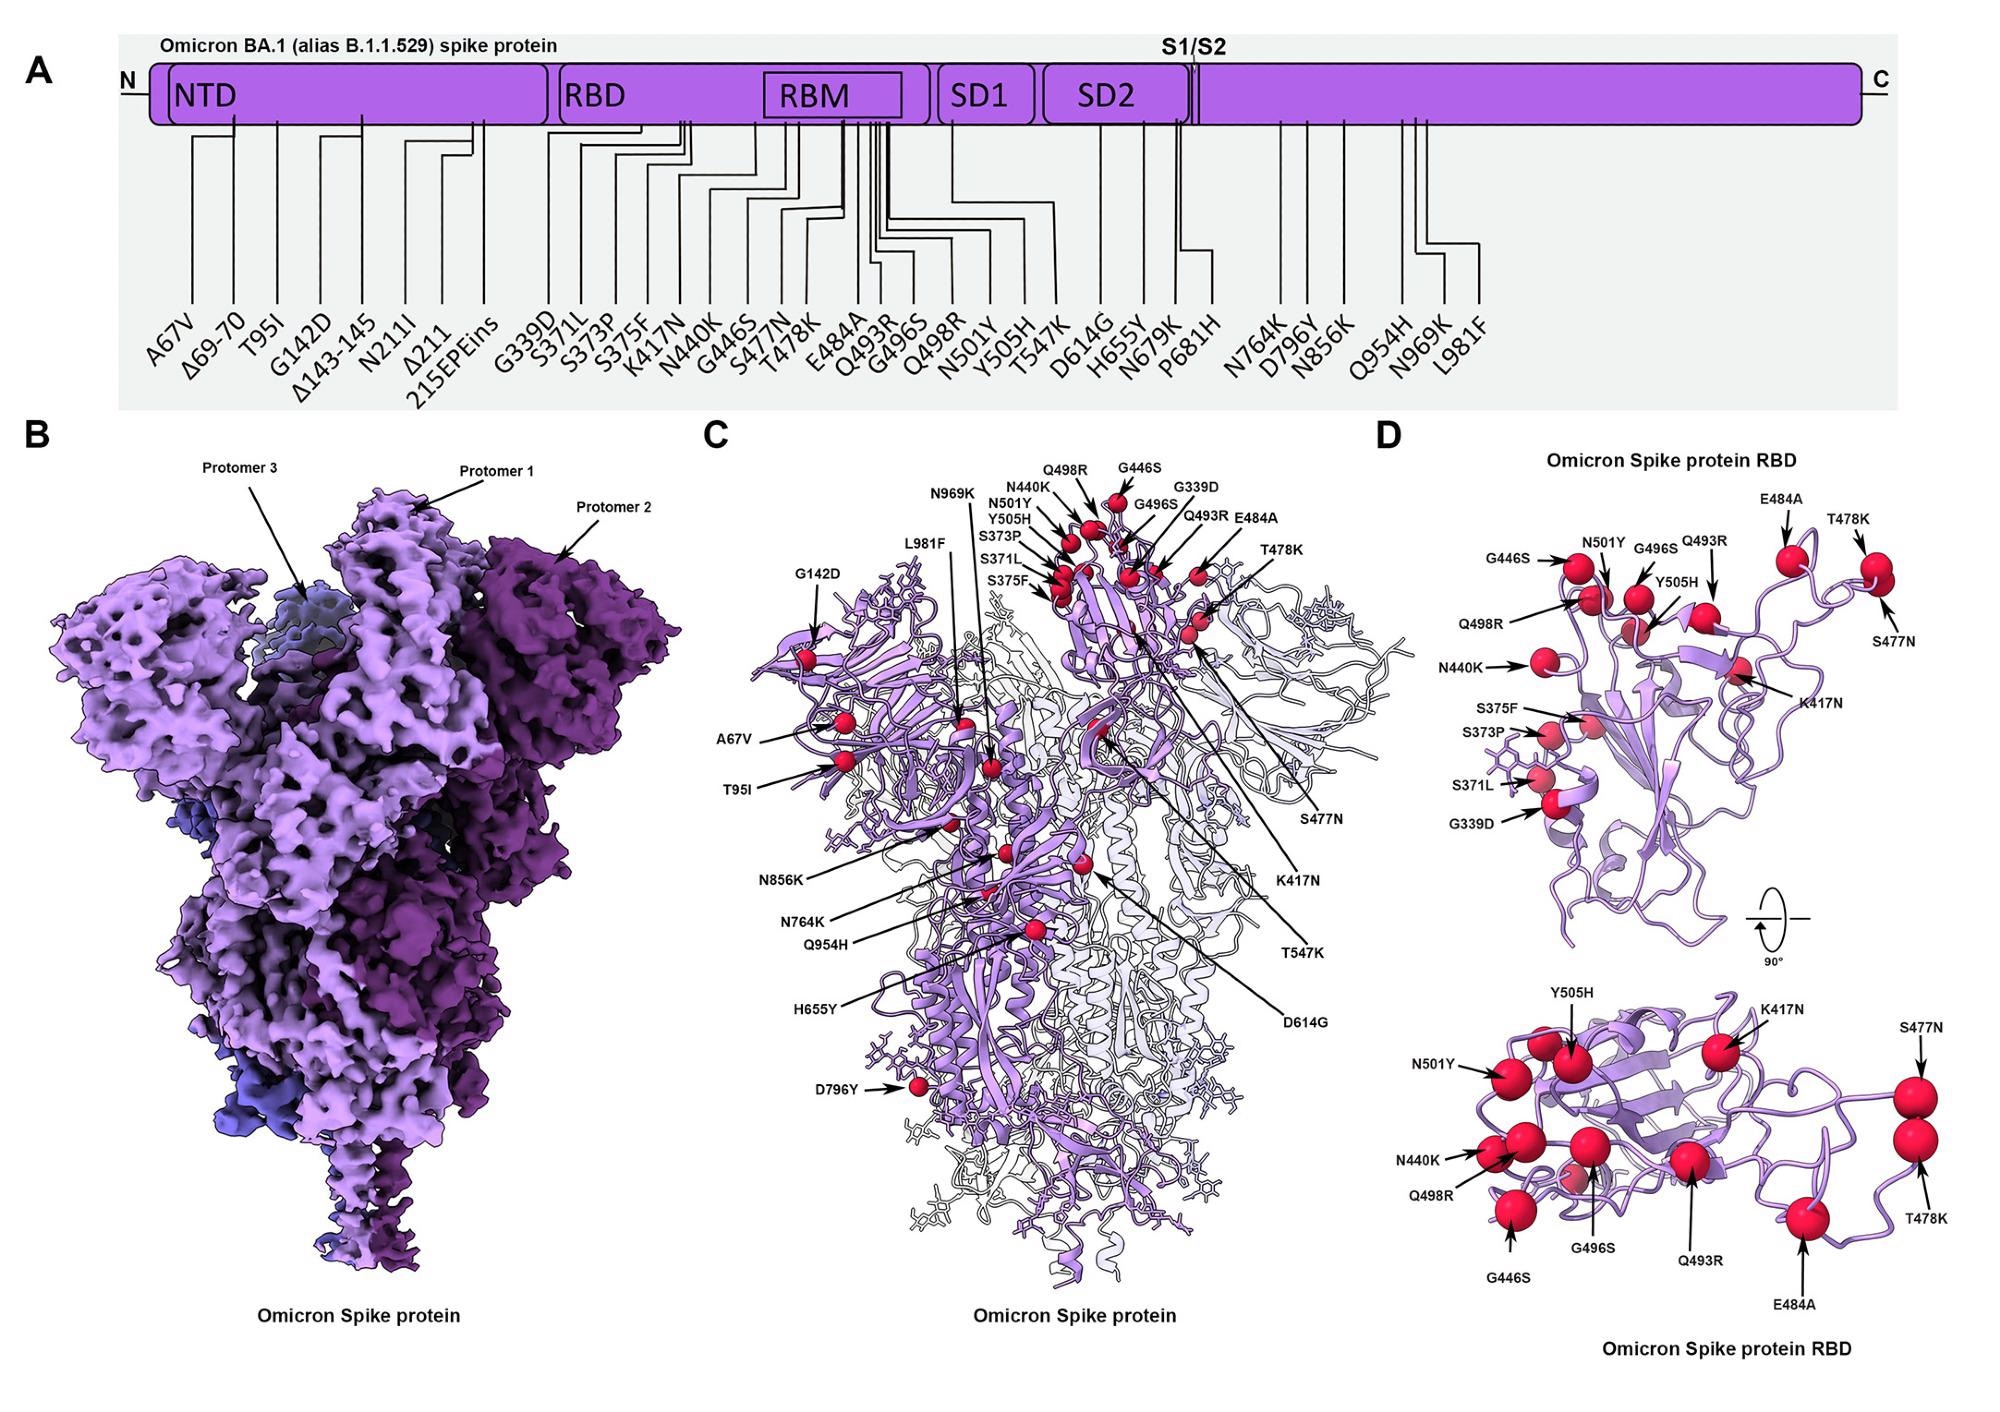 Estructura crio-EM de la proteína omicrón de espiga (a) Diagrama esquemático que muestra la disposición del dominio de la proteína de espiga.  Se destacan las mutaciones en la variante de la proteína espiga Omicron.  (B) Mapa Cryo-EM de la proteína de espiga Omicron con una resolución de 2,79 Å.  Los protómeros están coloreados en diferentes tonos de púrpura.  (C) Estructura Cryo-EM de la proteína de punta Omicron que indica sitios de mutación típicos en uno de los protómeros.  (D) Dominio de unión al receptor de picos Omicron (RBD) que se muestra en dos direcciones ortogonales a las posiciones Cα de los residuos mutantes que se muestran como esferas rojas.